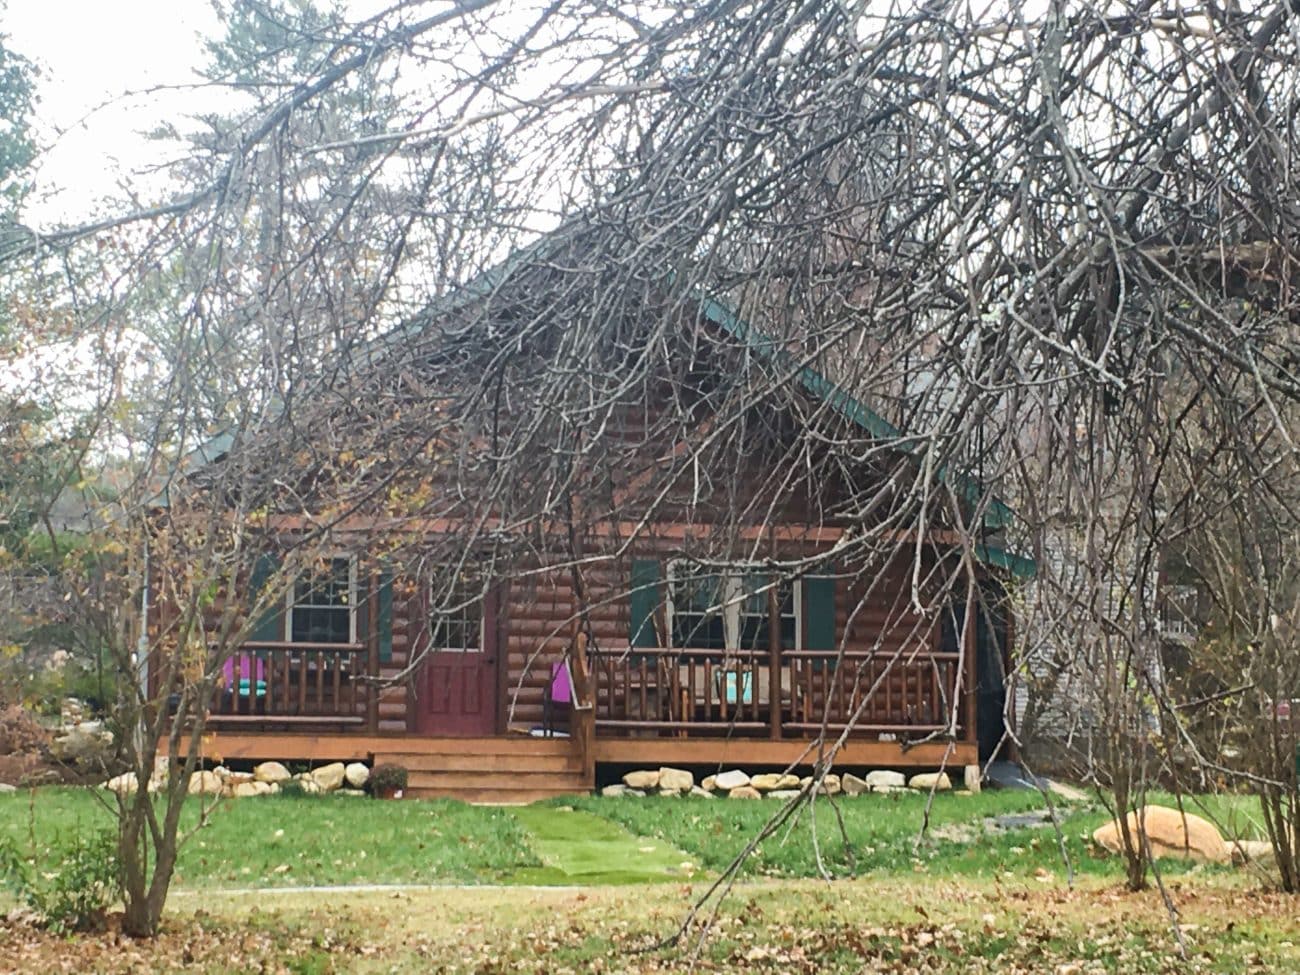 Settler Modular home in Massachusetts